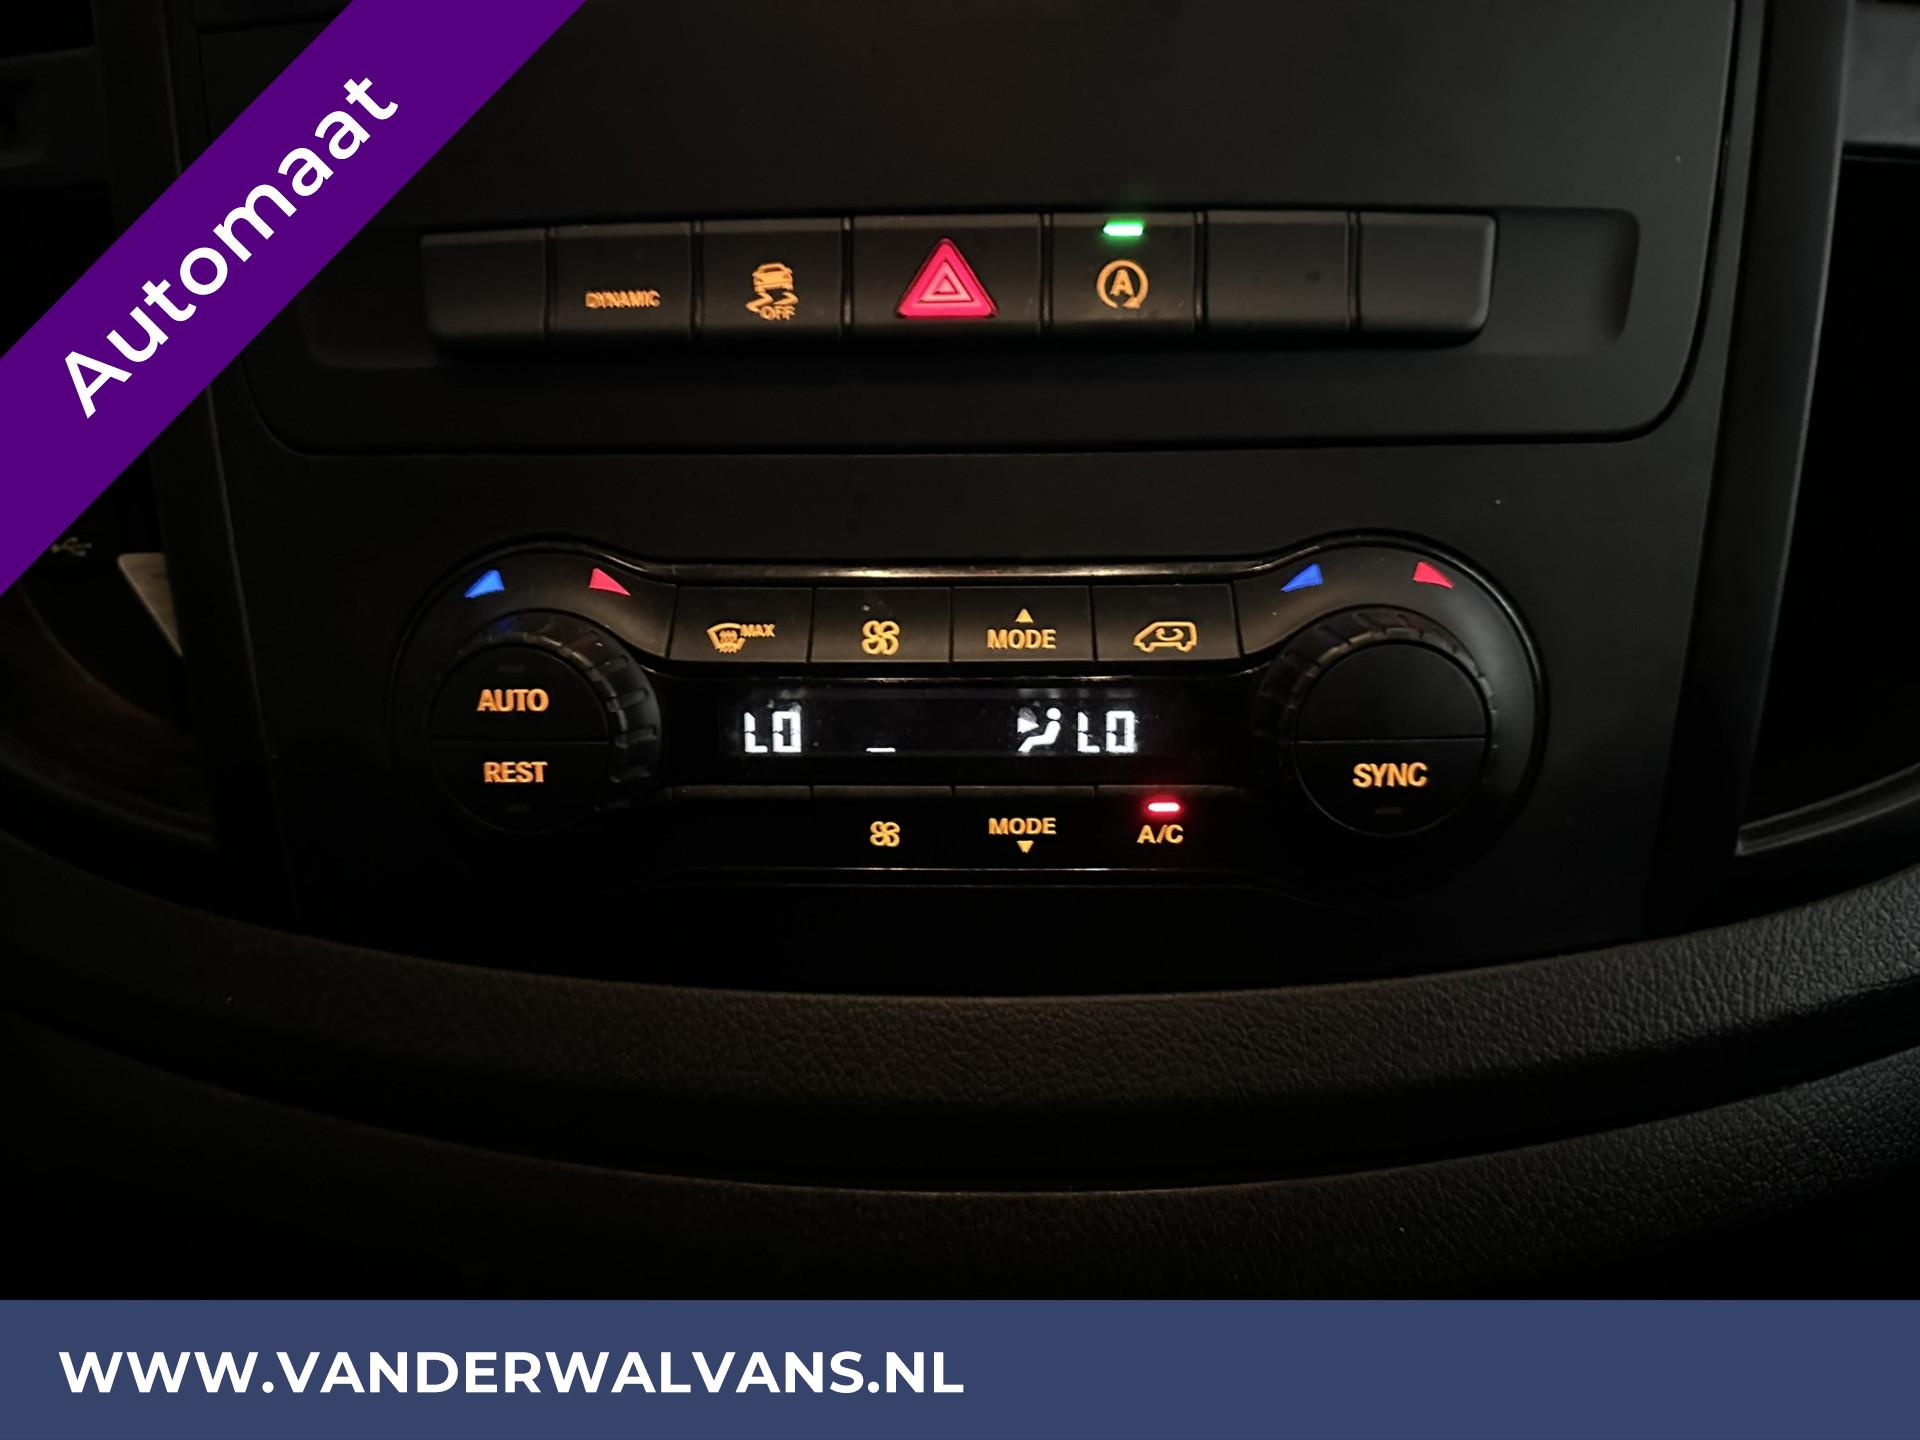 Foto 4 van Mercedes-Benz Vito 114 CDI 136pk 9G Tronic Automaat L2H1 Euro6 Airco | Camera | Navigatie | 2500kg Trekhaak